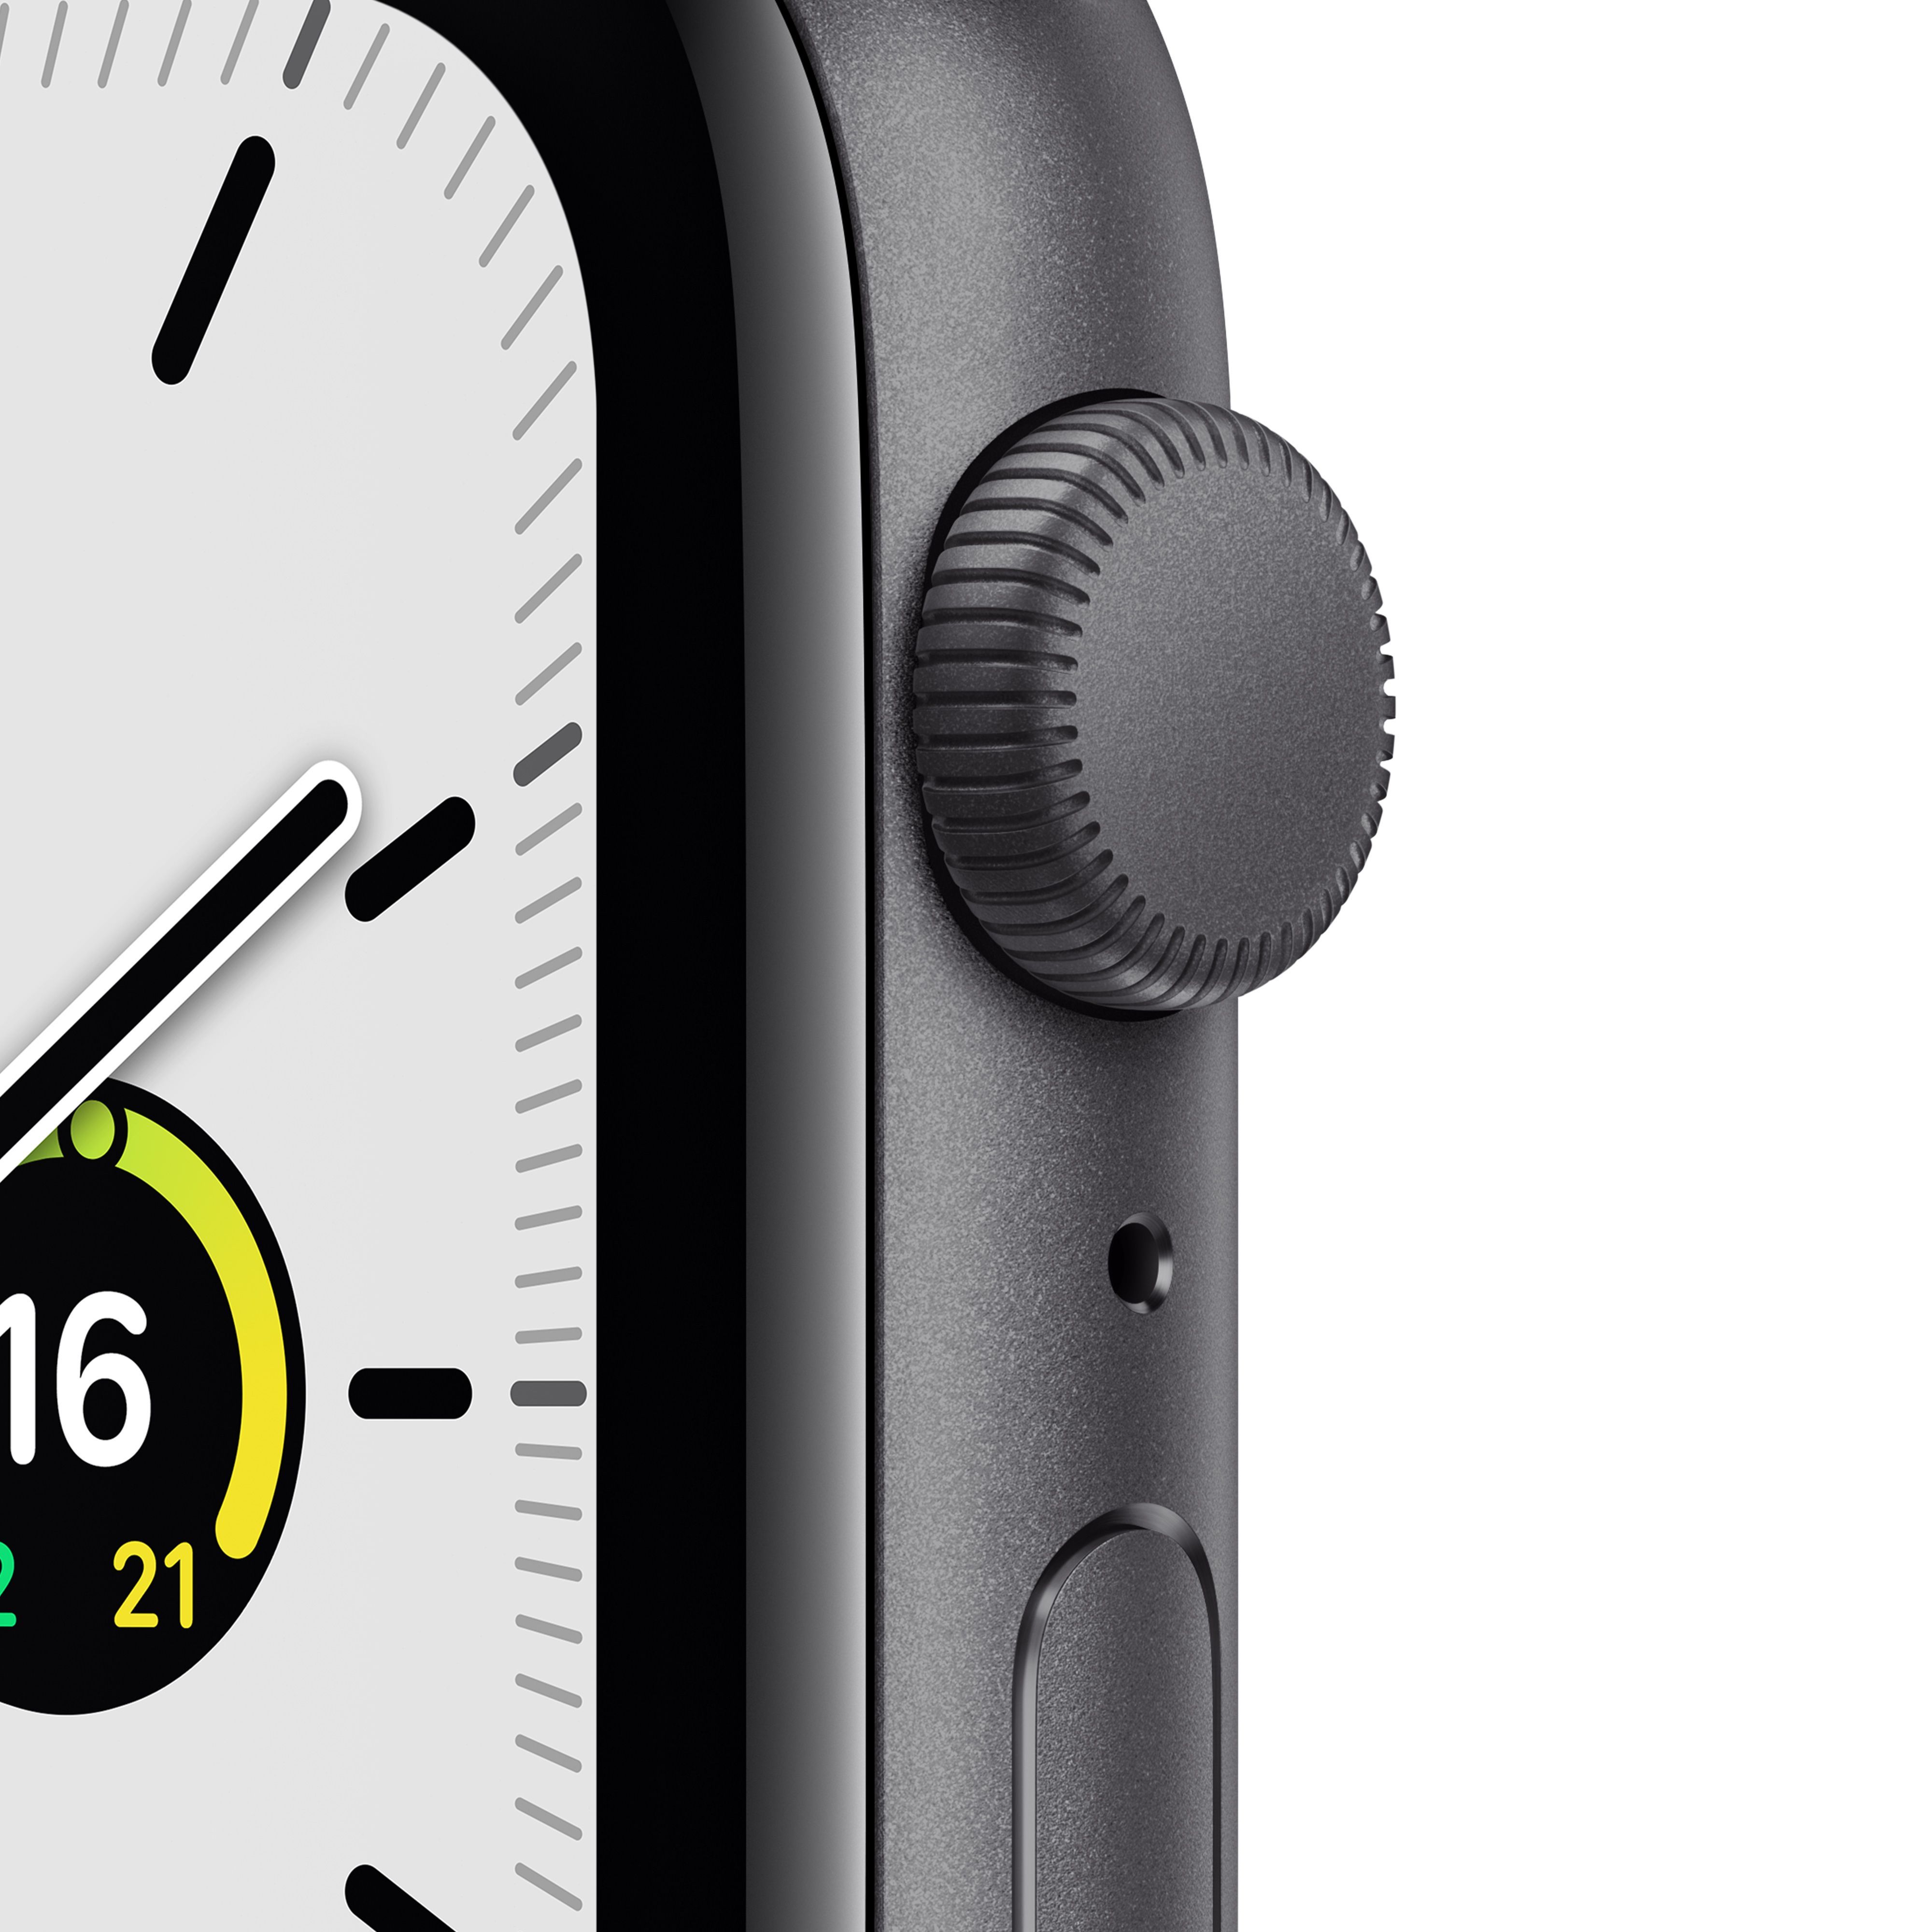 Apple Watch SE, 44мм, корпус из алюминия цвета "серый космос", спортивный ремешок "тёмная ночь"